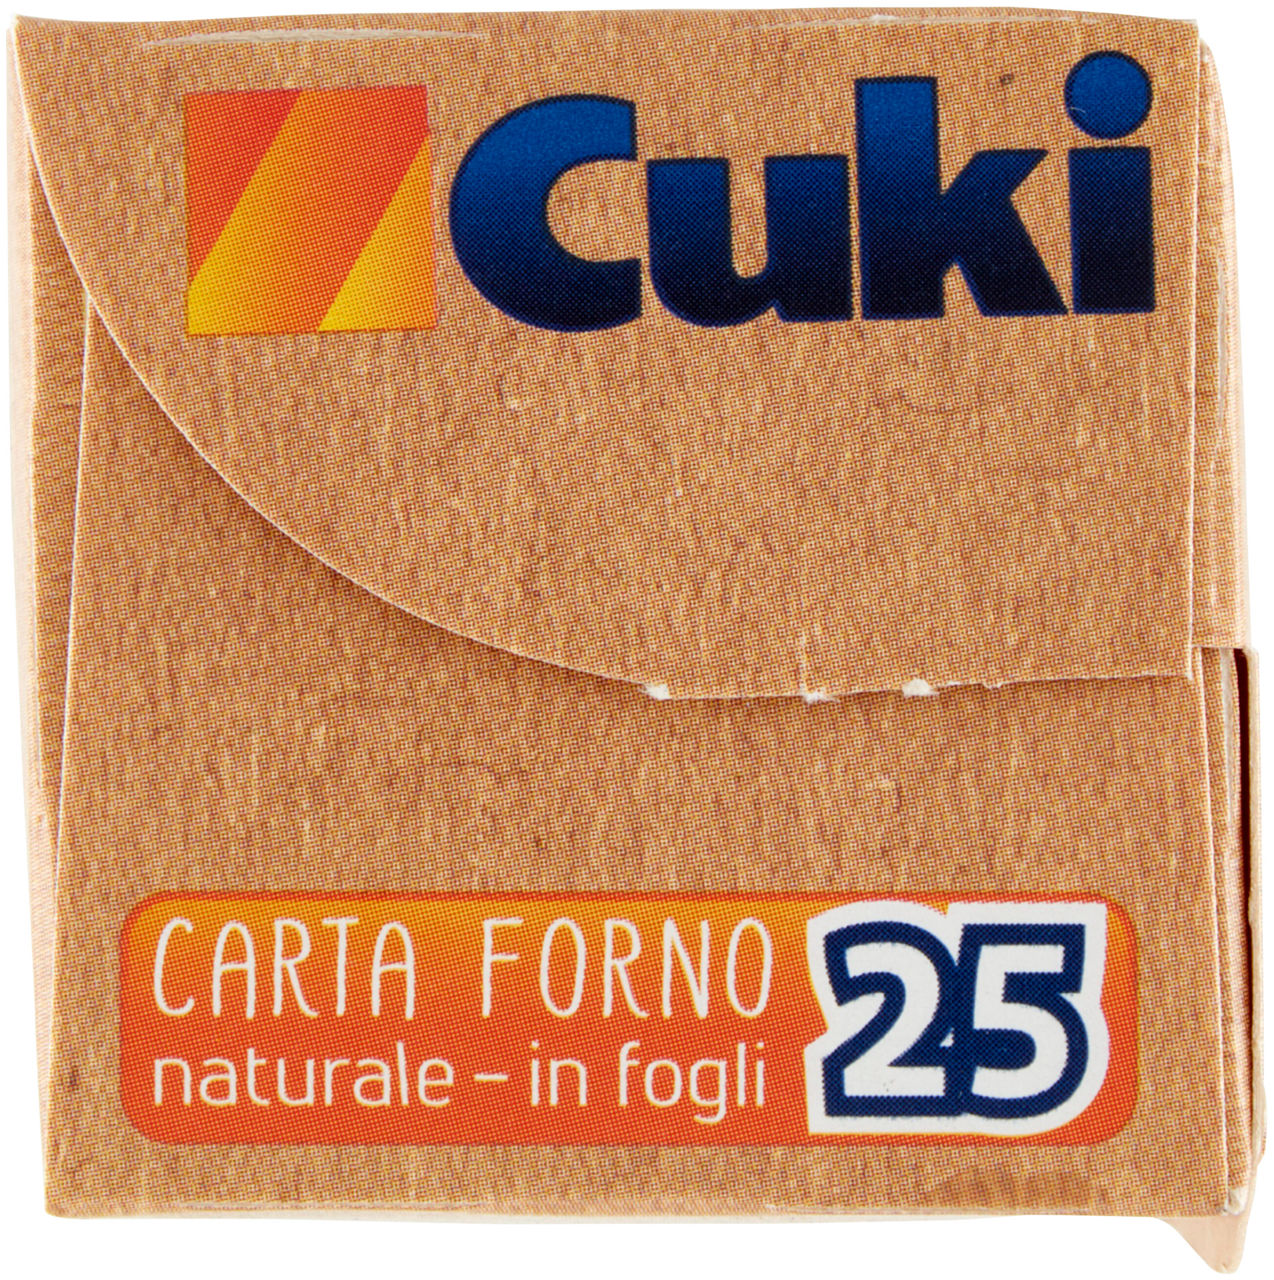 CARTA FORNO NATURALE IN FOGLI CUKI 33X38CM PZ.25 - 1